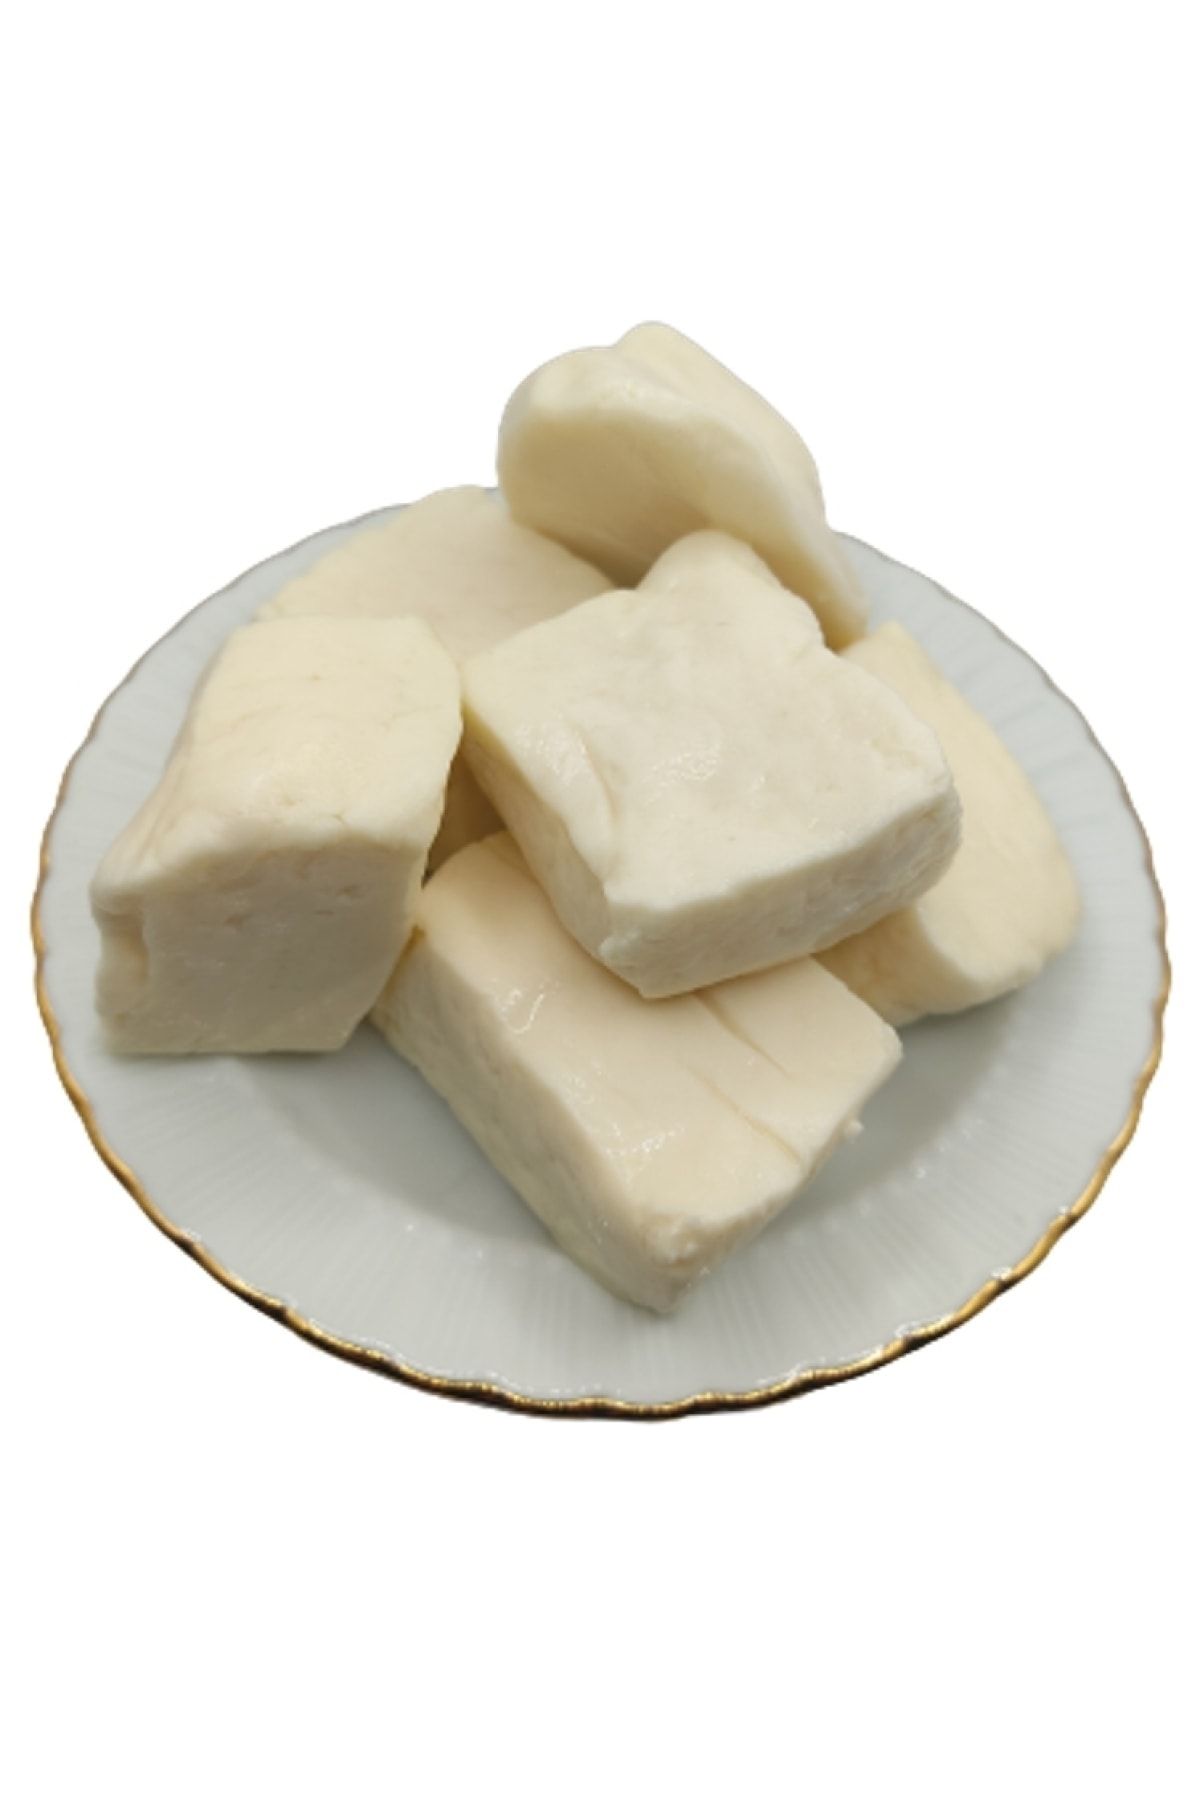 bakkal hasan Tam Yağlı Antep Peyniri (koyun Peyniri) 10 Kg -